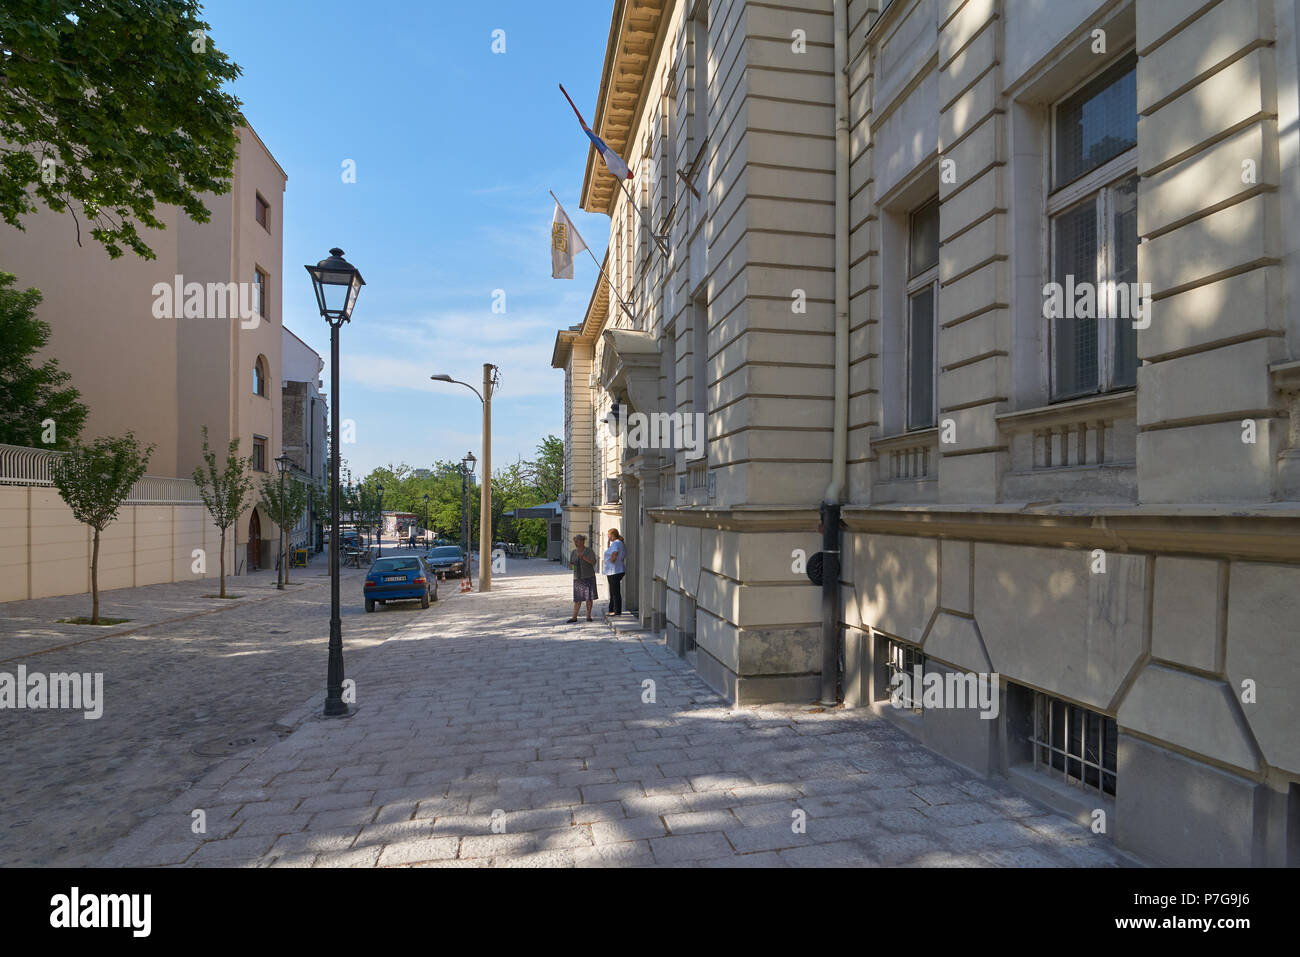 Belgrado, Serbia - Maggio 03, 2018: vista la mattina su Kosancicev venac street con belle vecchie case su di esso. Due donne di mezza età di fumare all'esterno. Foto Stock